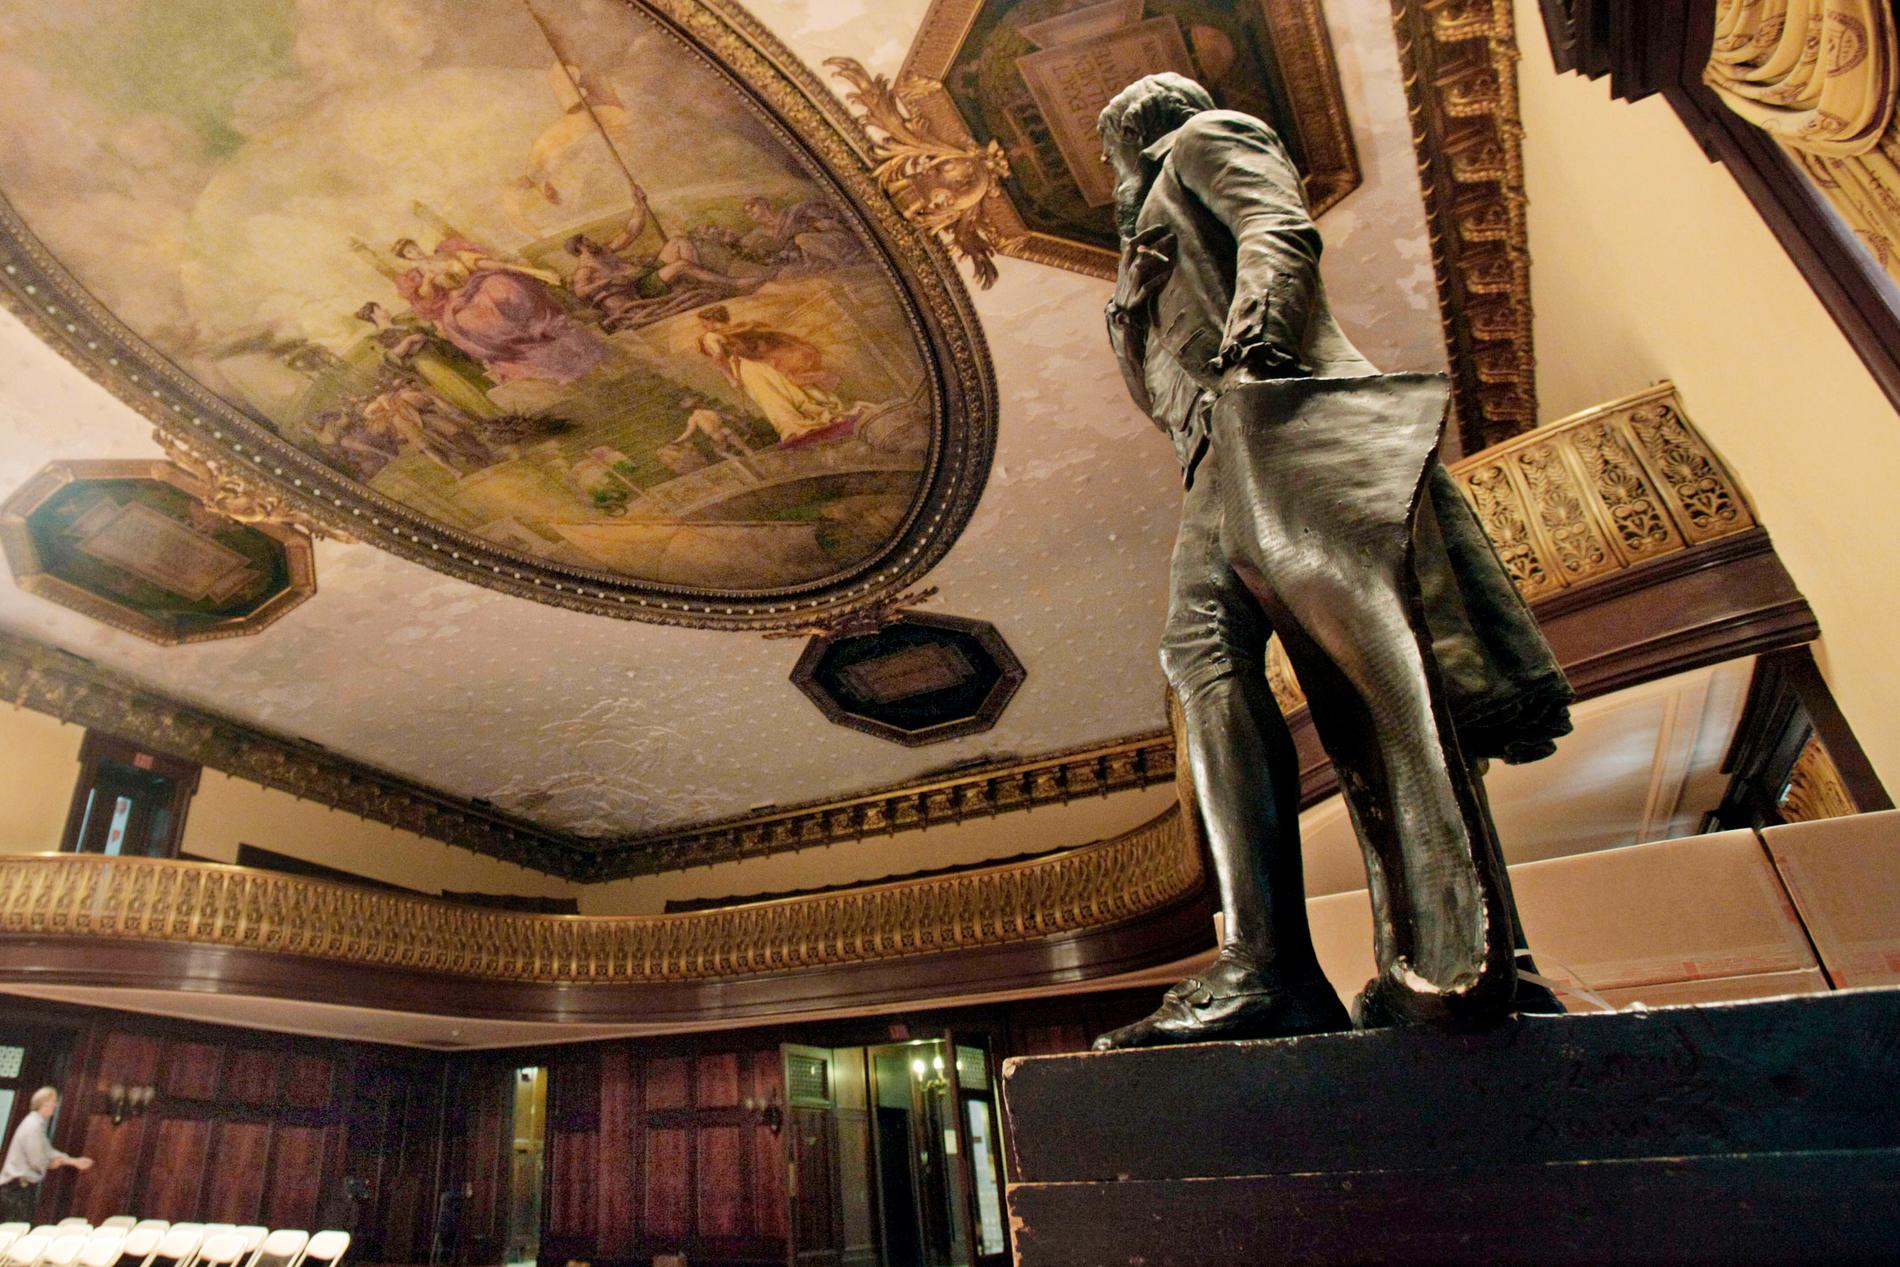 En staty som föreställer Thomas Jefferson, president och slavägare, förs bort från stadshuset City hall i New York. Arkivbild.